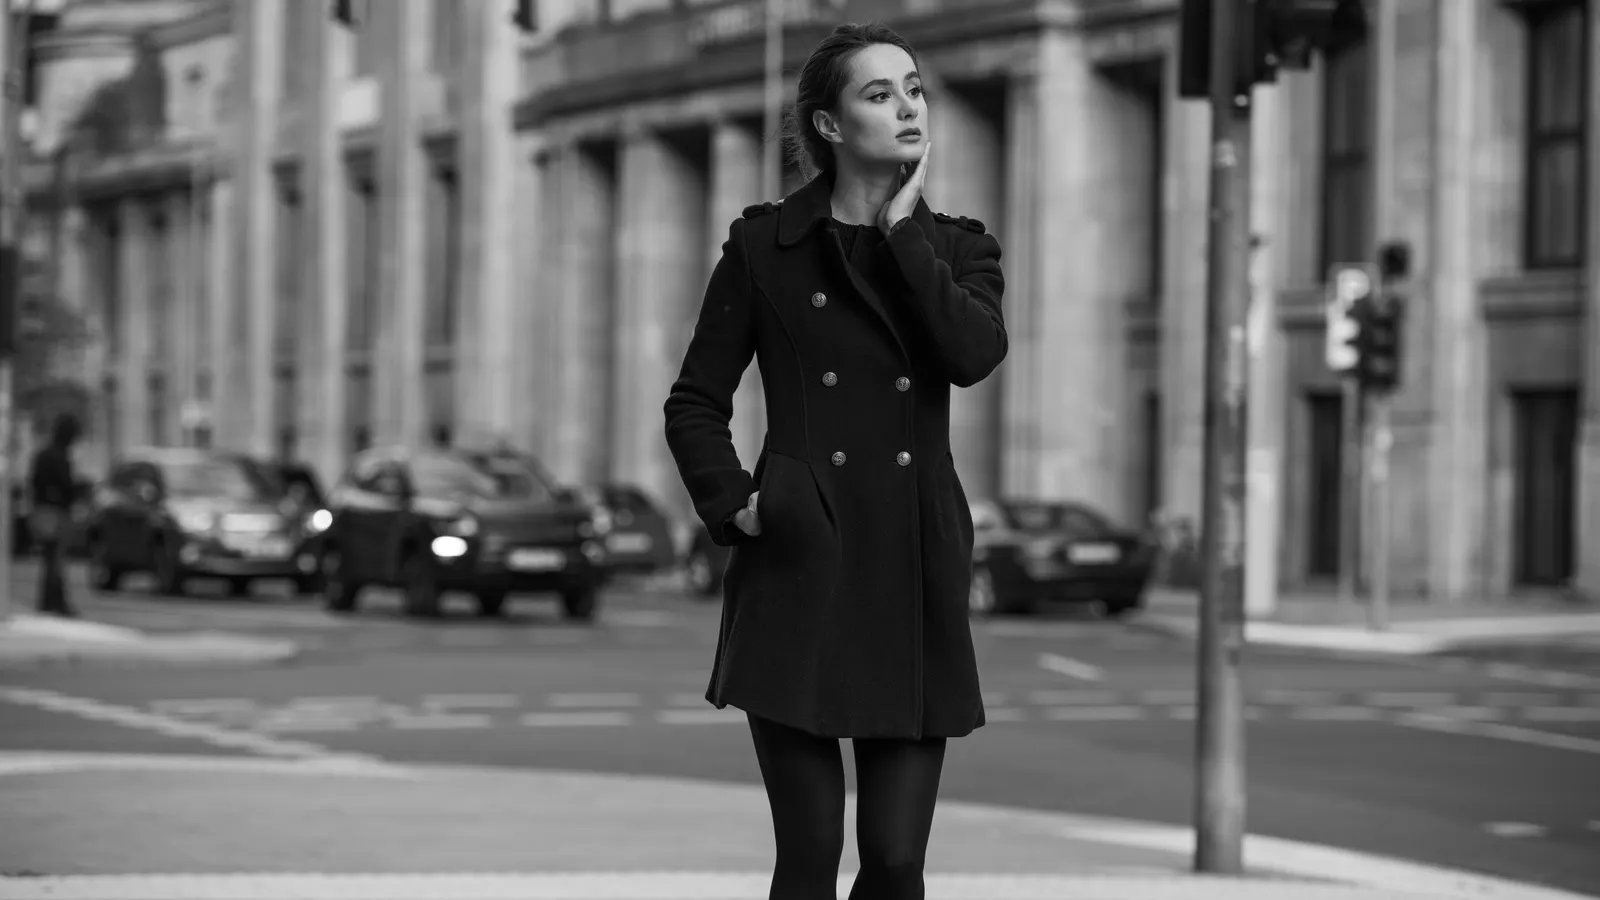 Woman on street in black coat